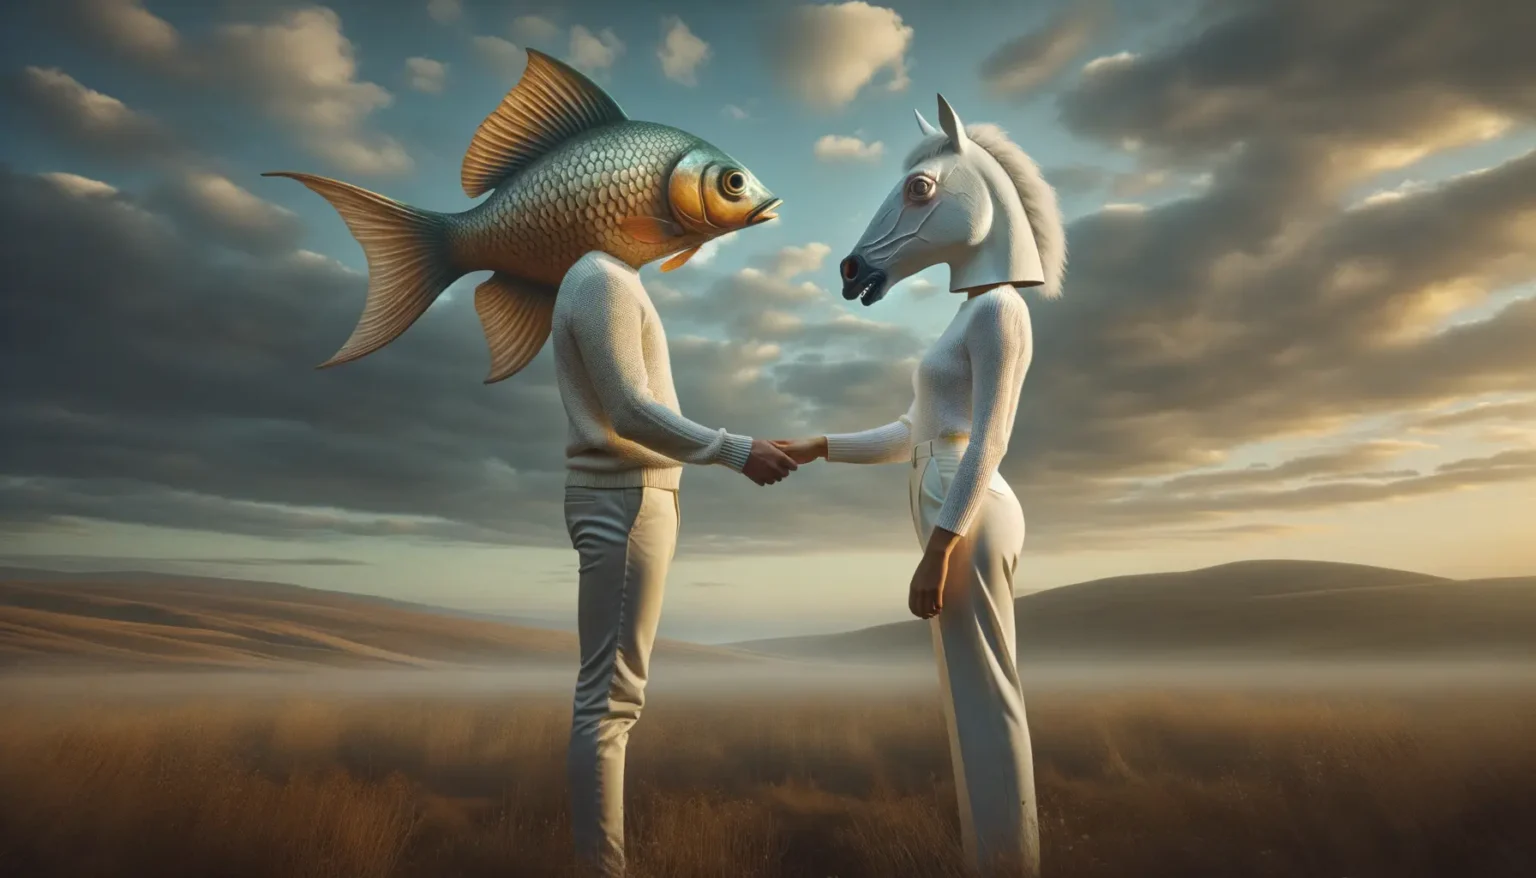 Zwei anthropomorphe Figuren mit den Köpfen eines Goldfisches und eines Pferdes halten sich an den Händen in einer surrealen Landschaft mit goldenen Grasfeldern und einem dramatischen Himmel mit Wolken im Hintergrund.